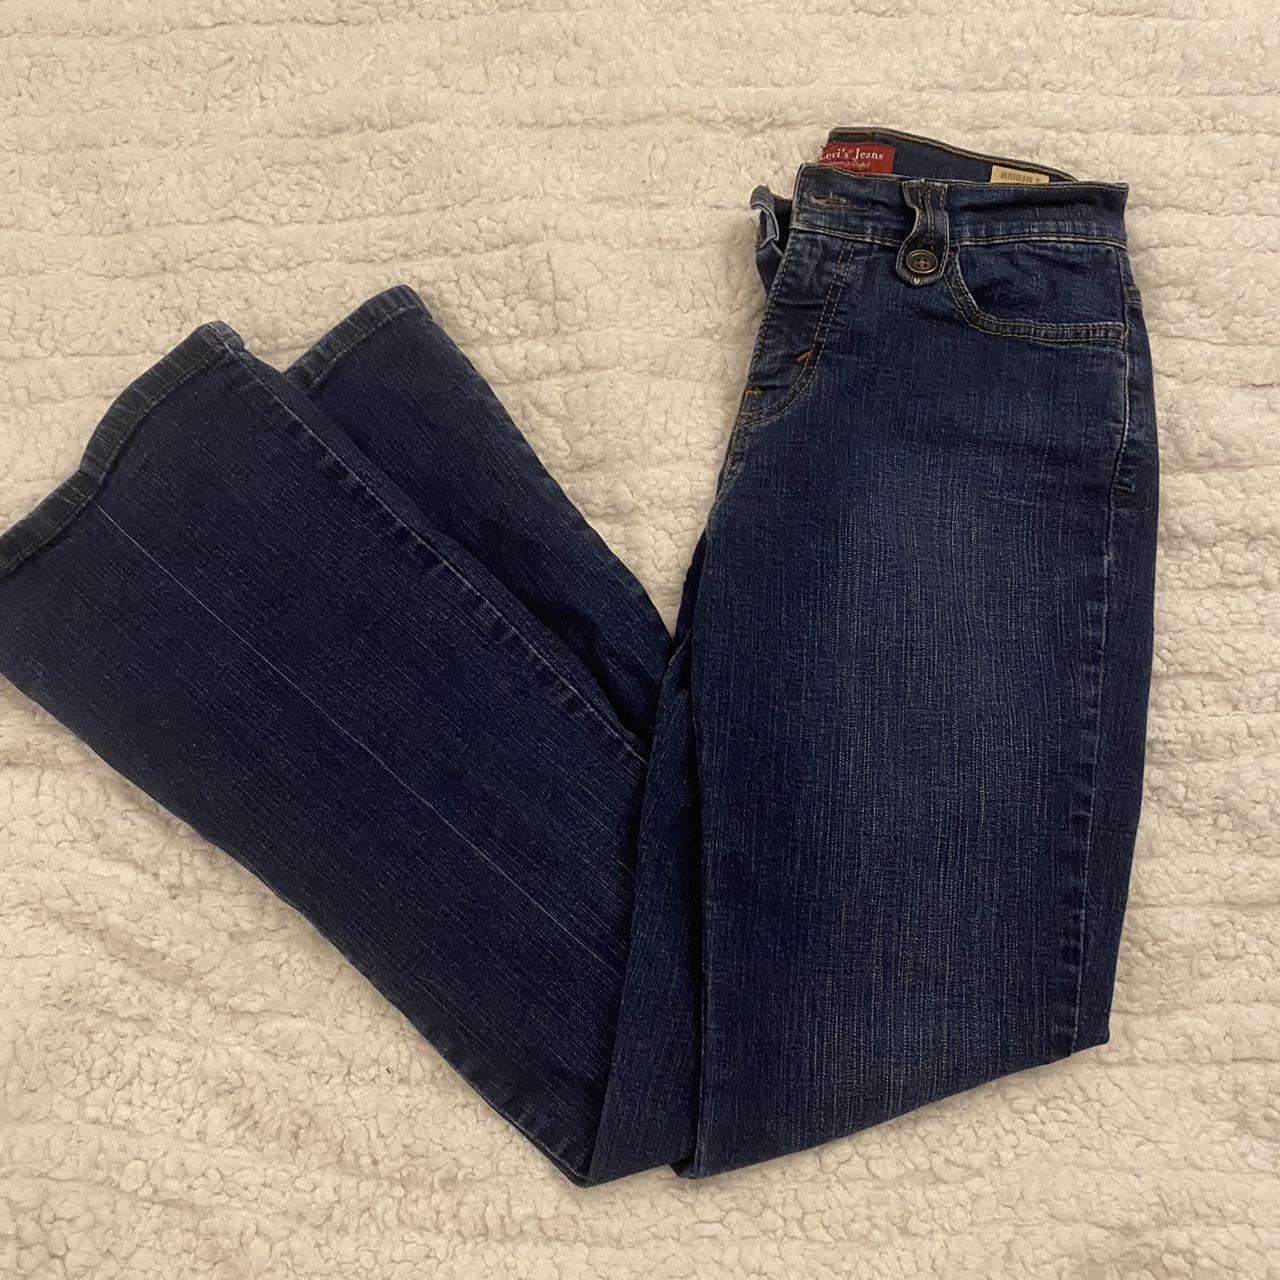 Vintage Levi bootcut Jeans: -size 4 -great... - Depop